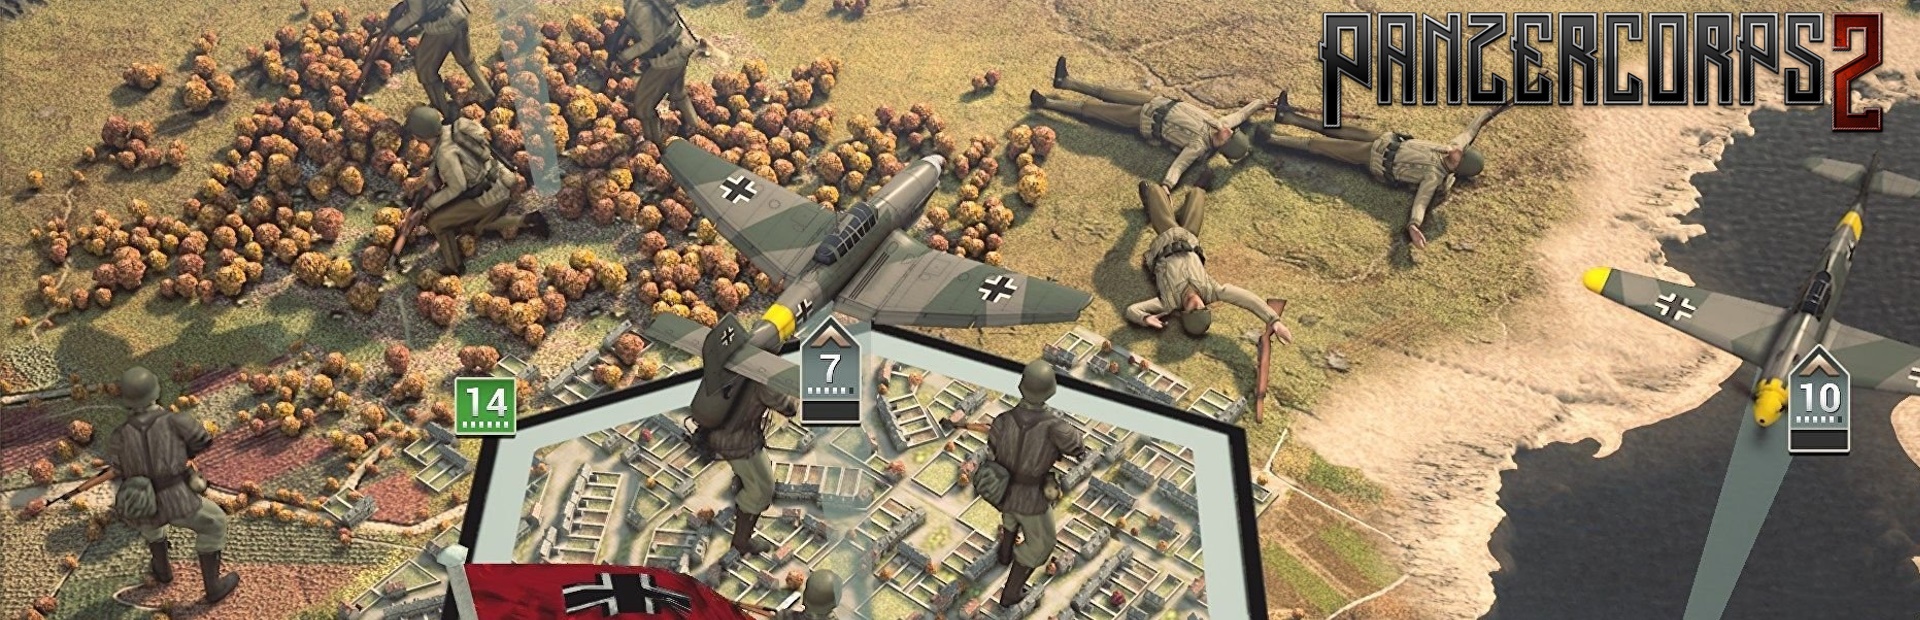 دانلود بازی Panzer Corps 2 برای PC | گیمباتو